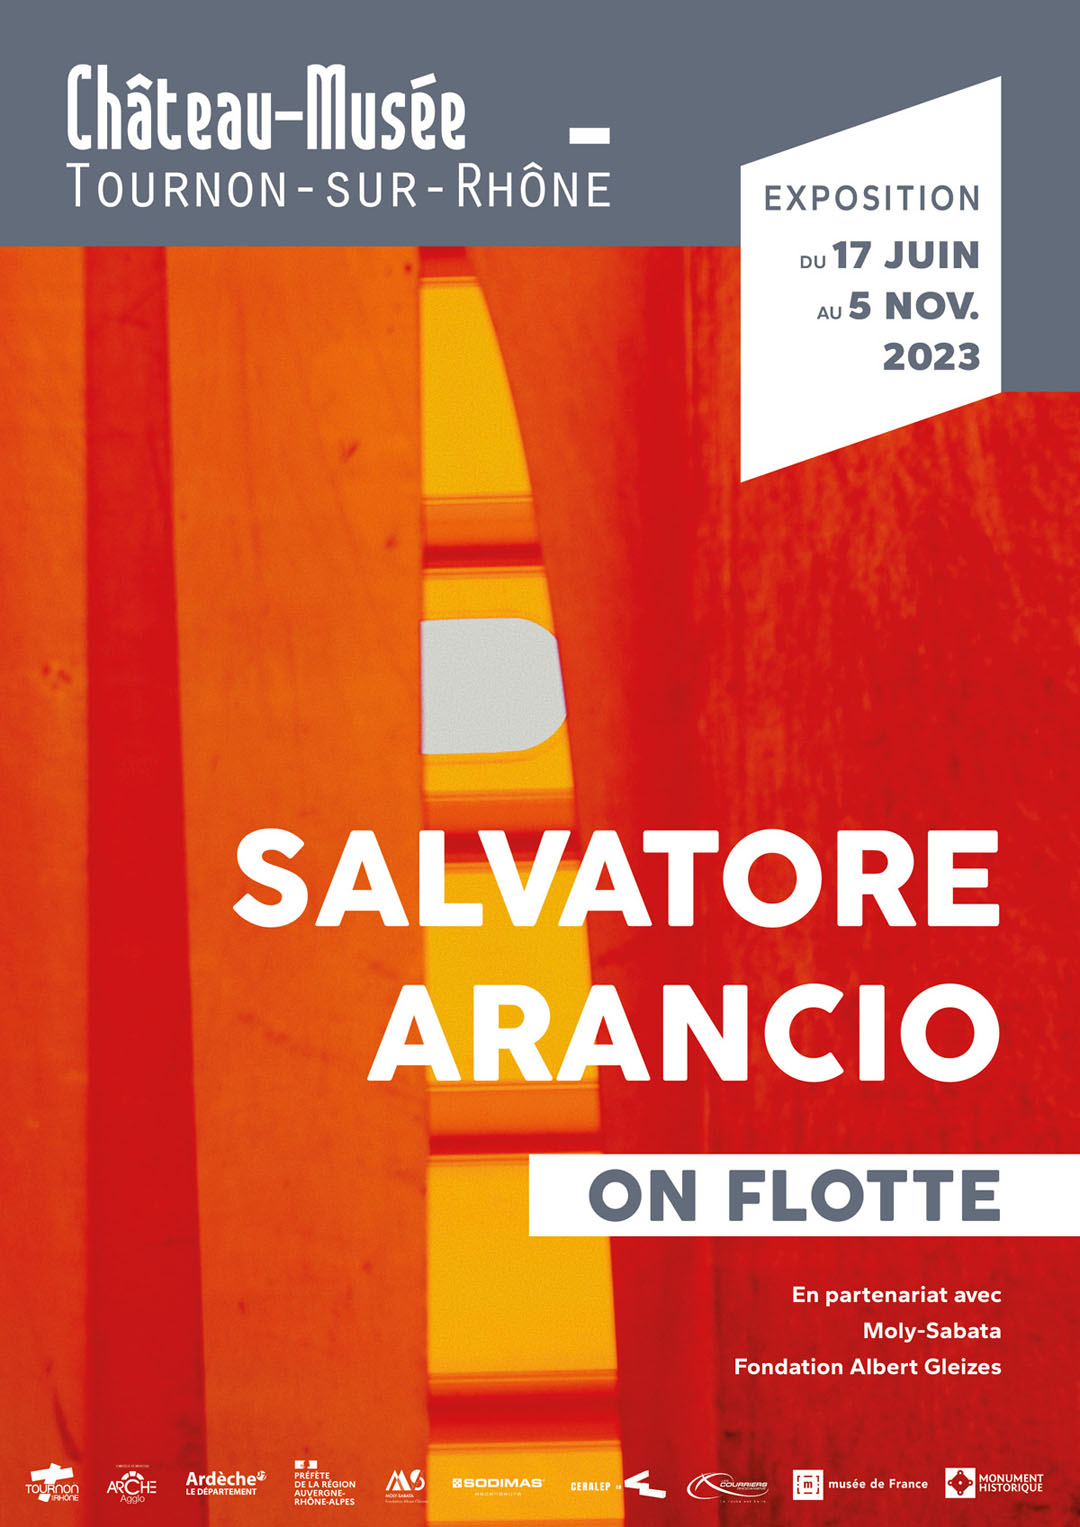 ON FLOTTE. Exposition de Salvatore Arancio du 17 juin au 5 novembre 2023 au Château-musée de Tournon-sur-Rhône.